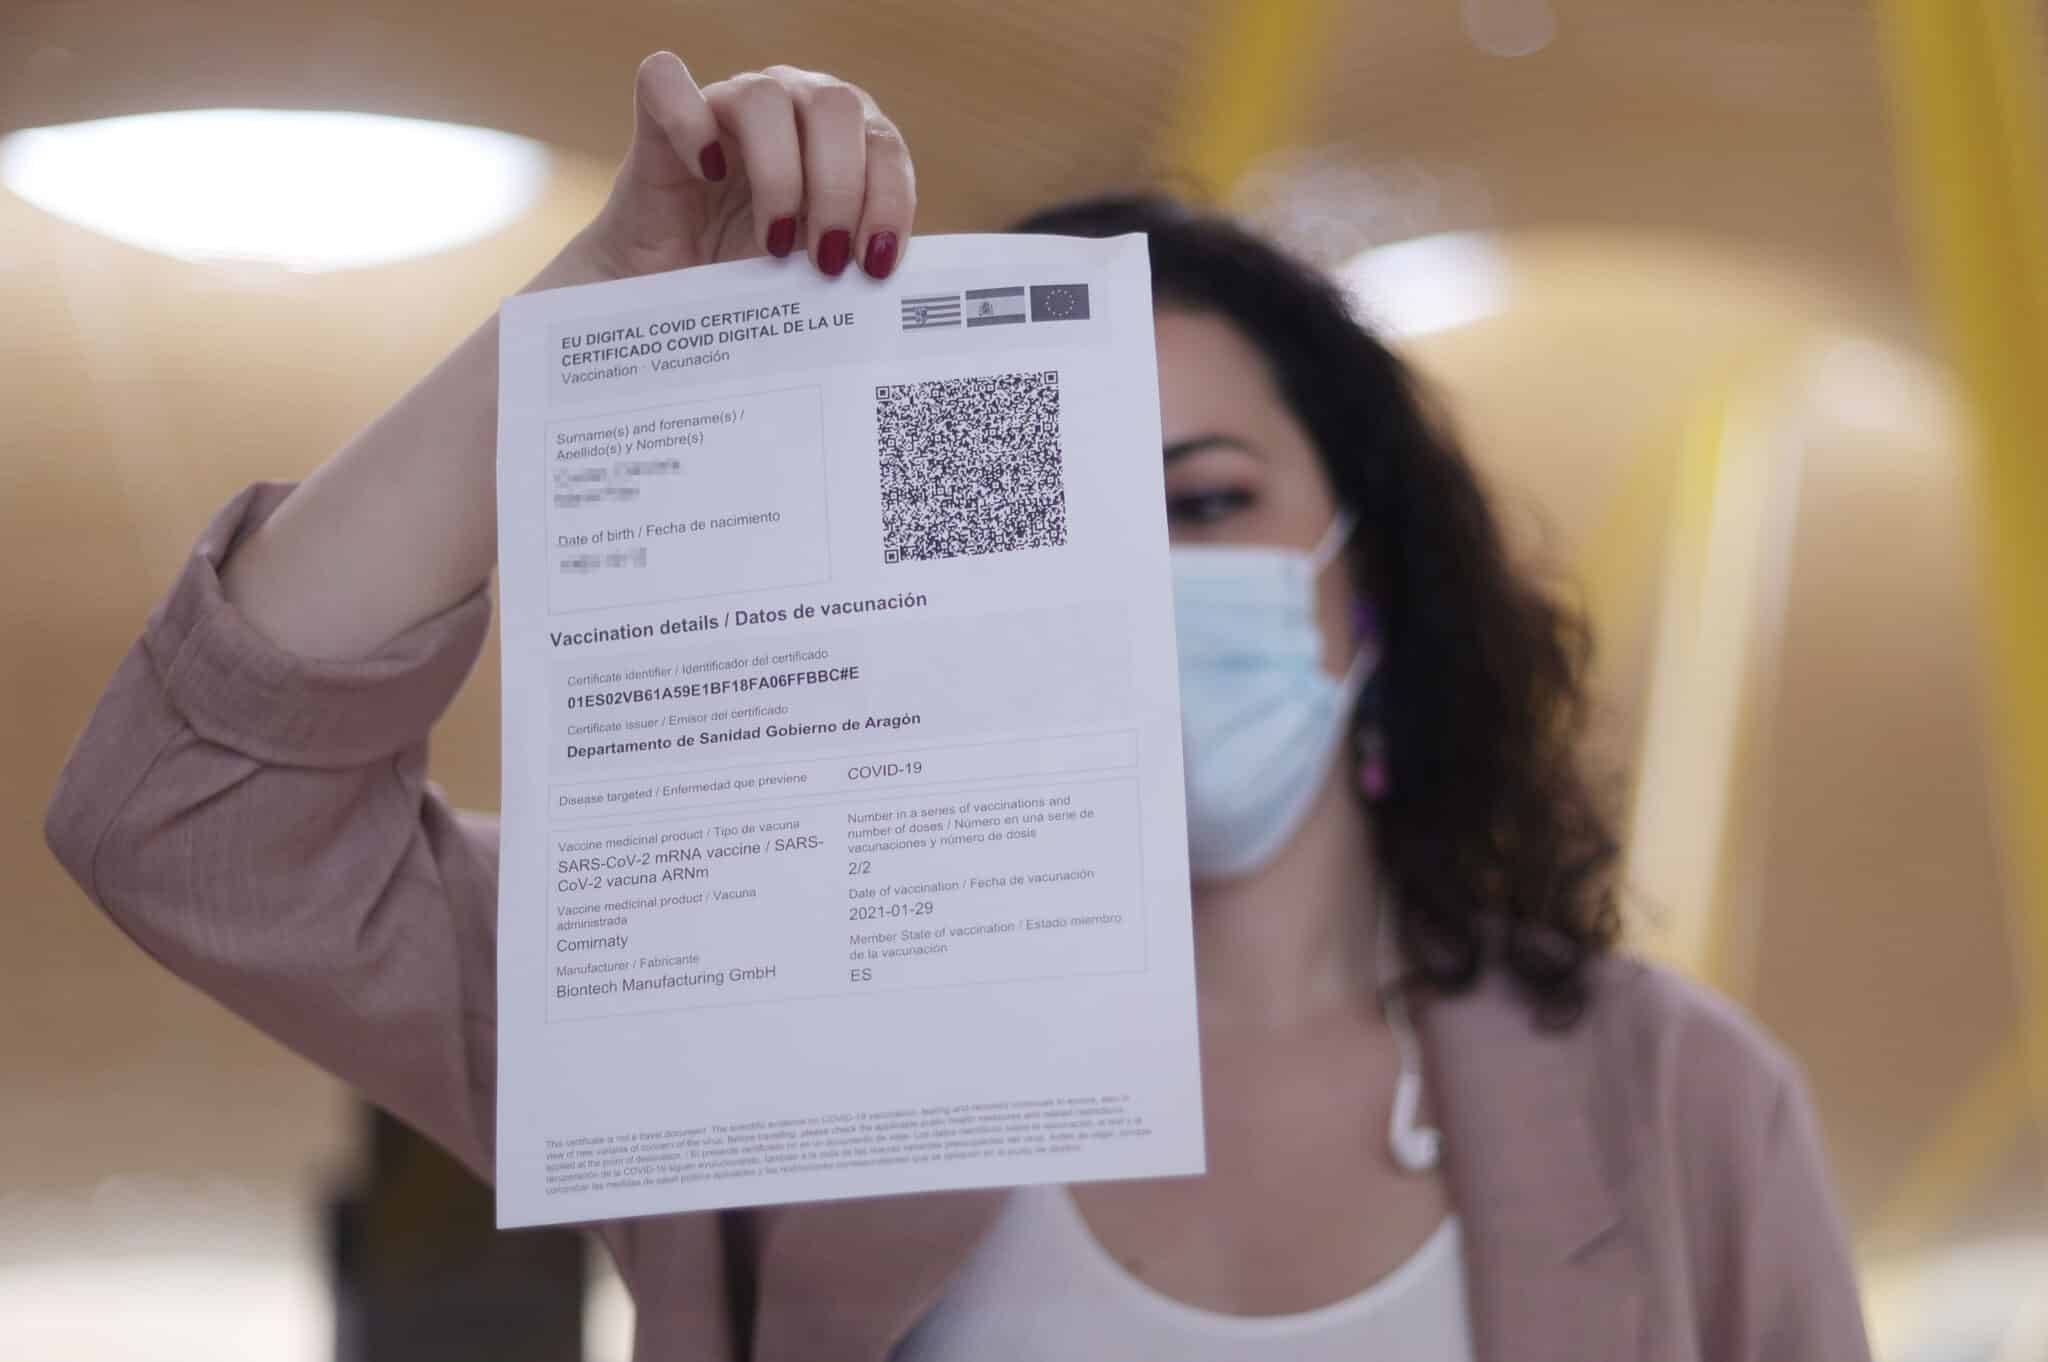 Una mujer muestra el certificado COVID Digital de la Unión Europea, durante el día en el que se puso en marcha para garantizar la movilidad segura ante la COVID19.